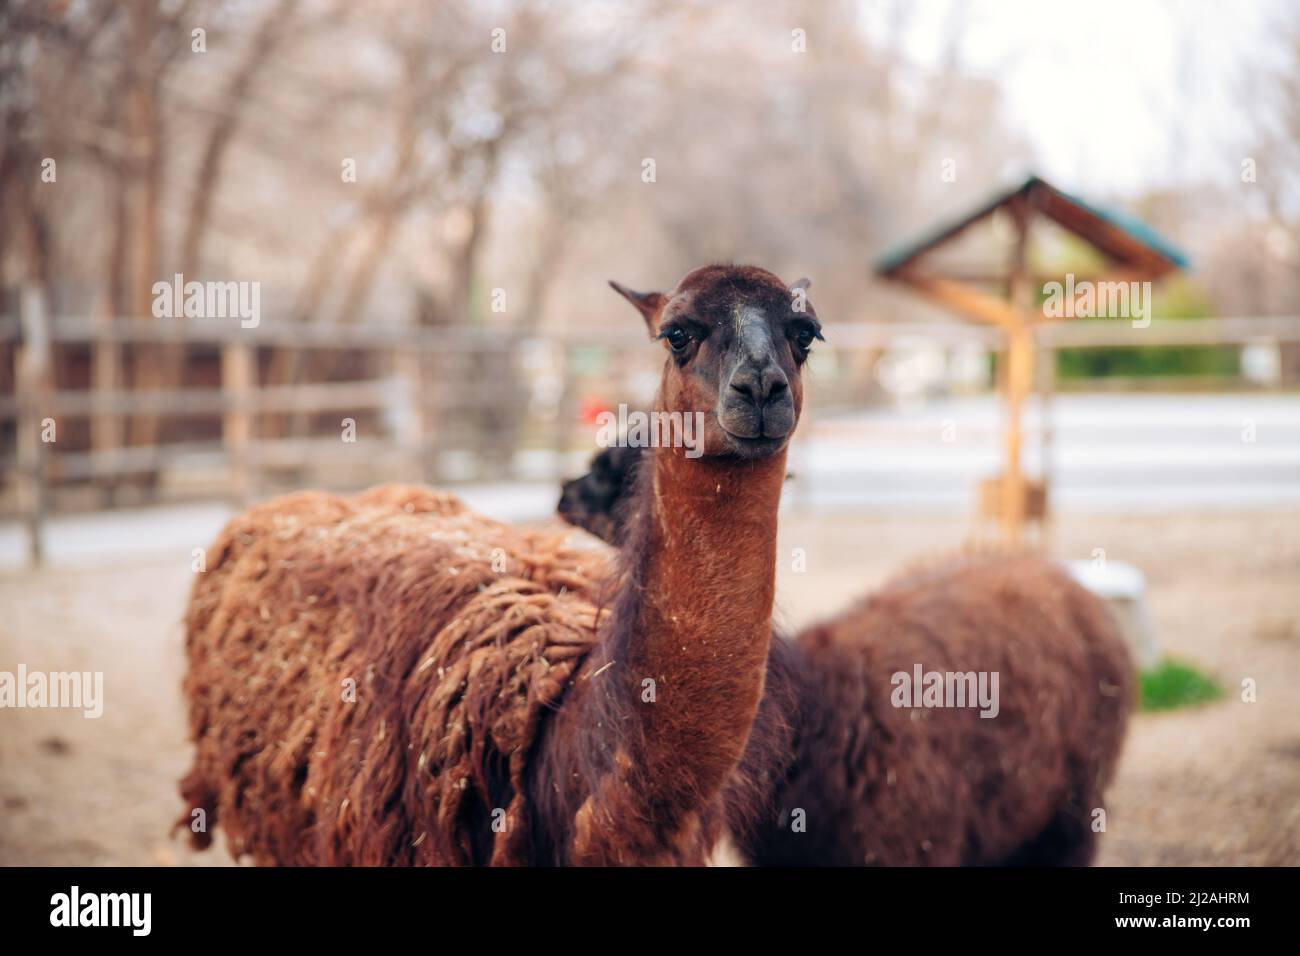 Ein süßes braunes Lama in einem Zoo-Park. Ein flauschiges Tiersäugetier. Ähnlich einer Alpaka. Hochwertige Fotos Stockfoto